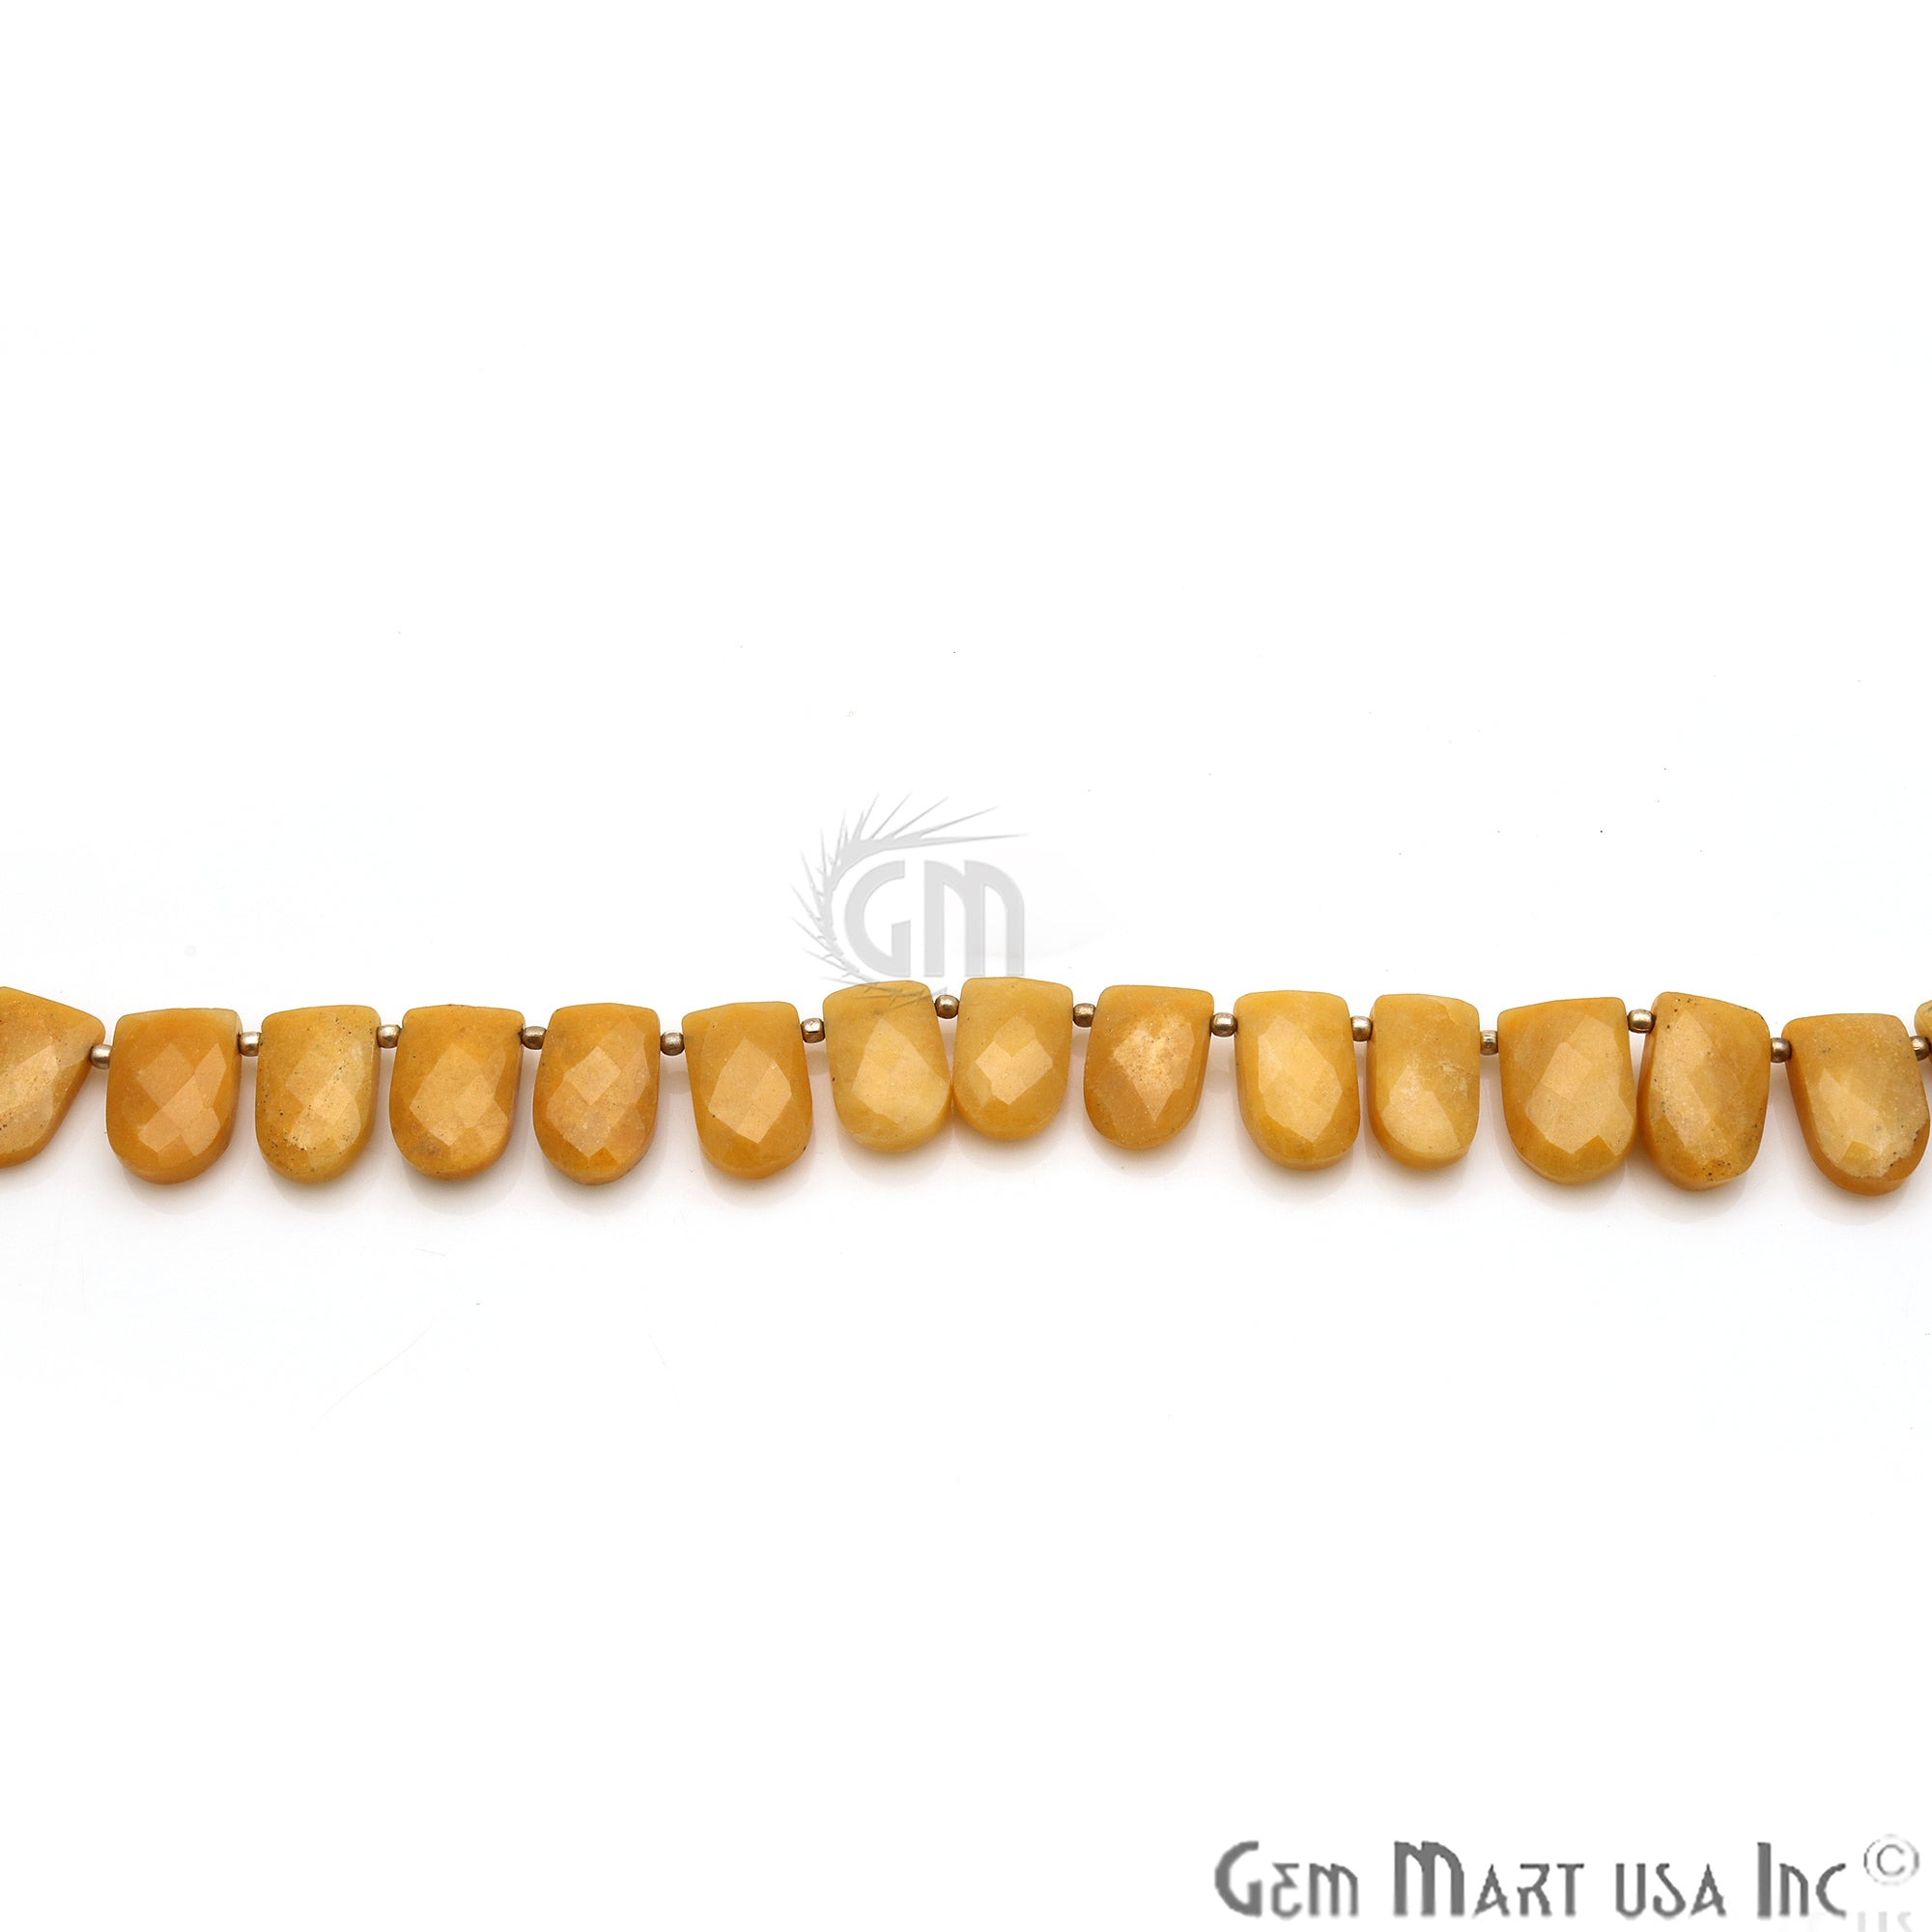 Yellow Aventurine Half Round 16x10mm Crafting Beads Gemstone Briolette Strands 8 Inch - GemMartUSA